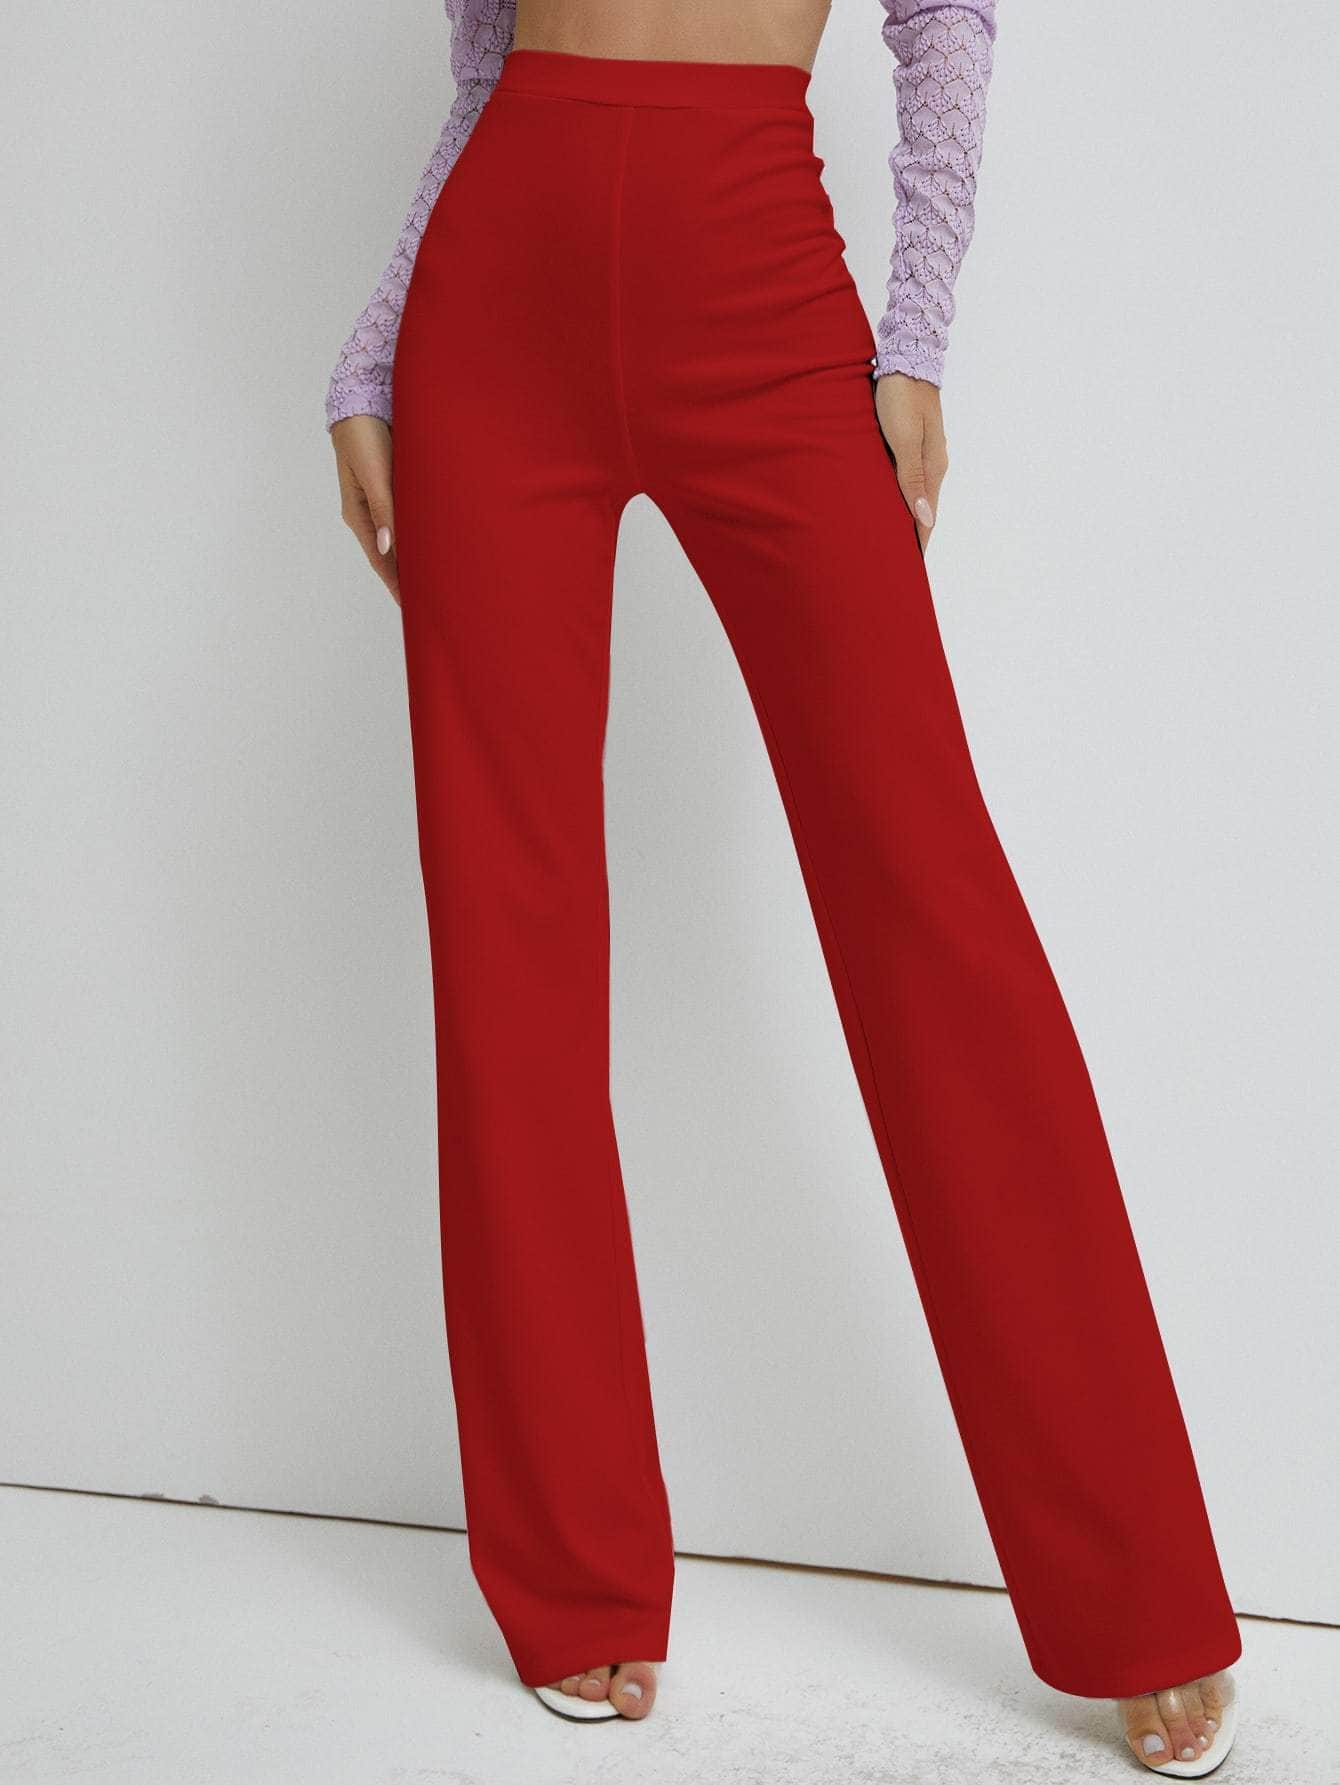 Muybonita.co Mujer/Pantalones/pantaloneselegantes3 Rojo / S pantalones de pierna recta de cintura alta